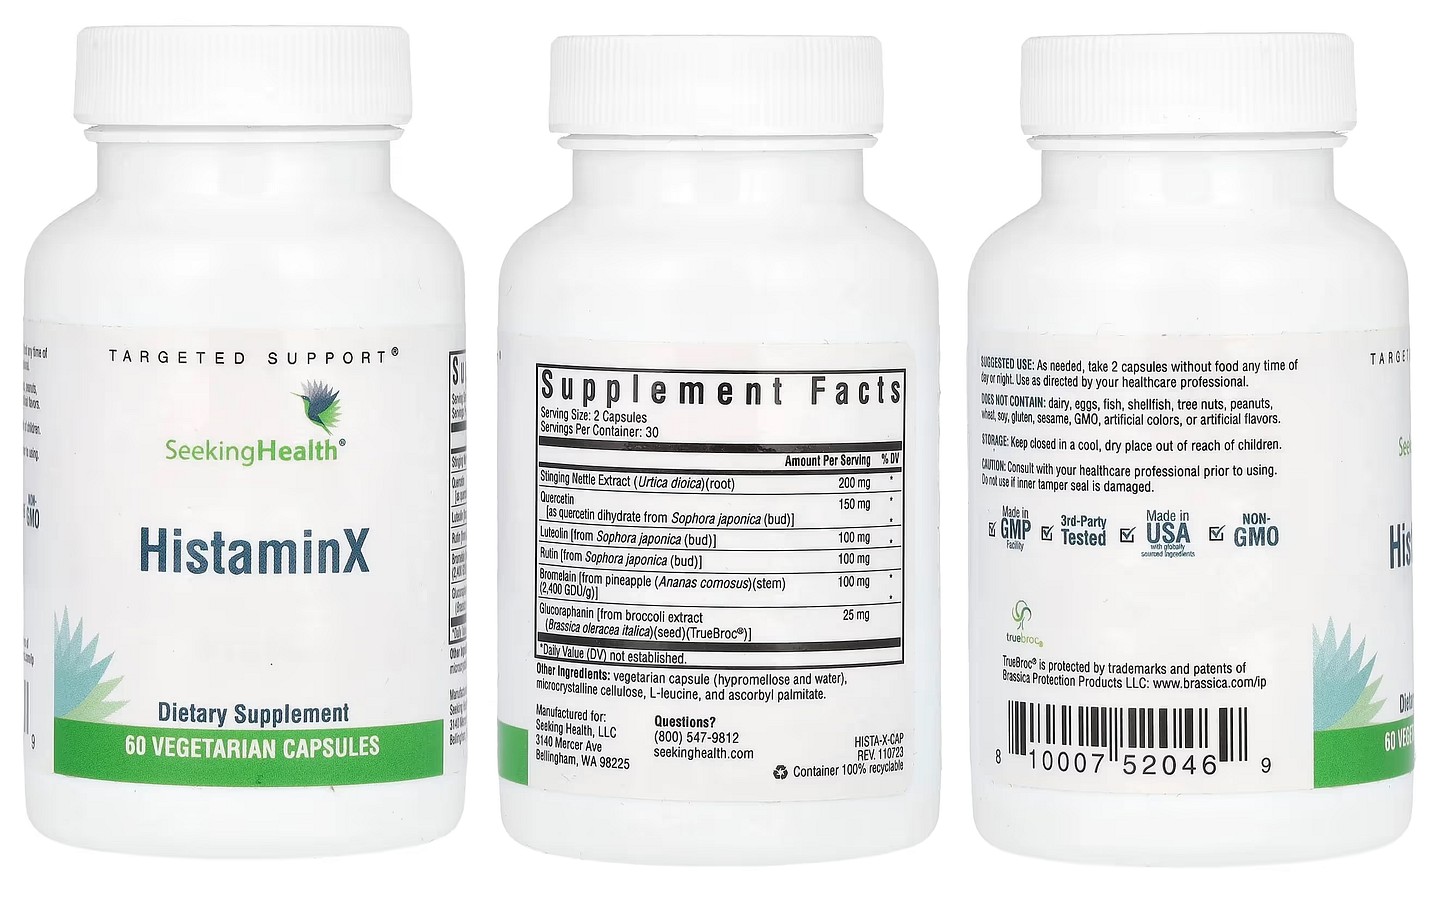 Seeking Health, HistaminX packaging